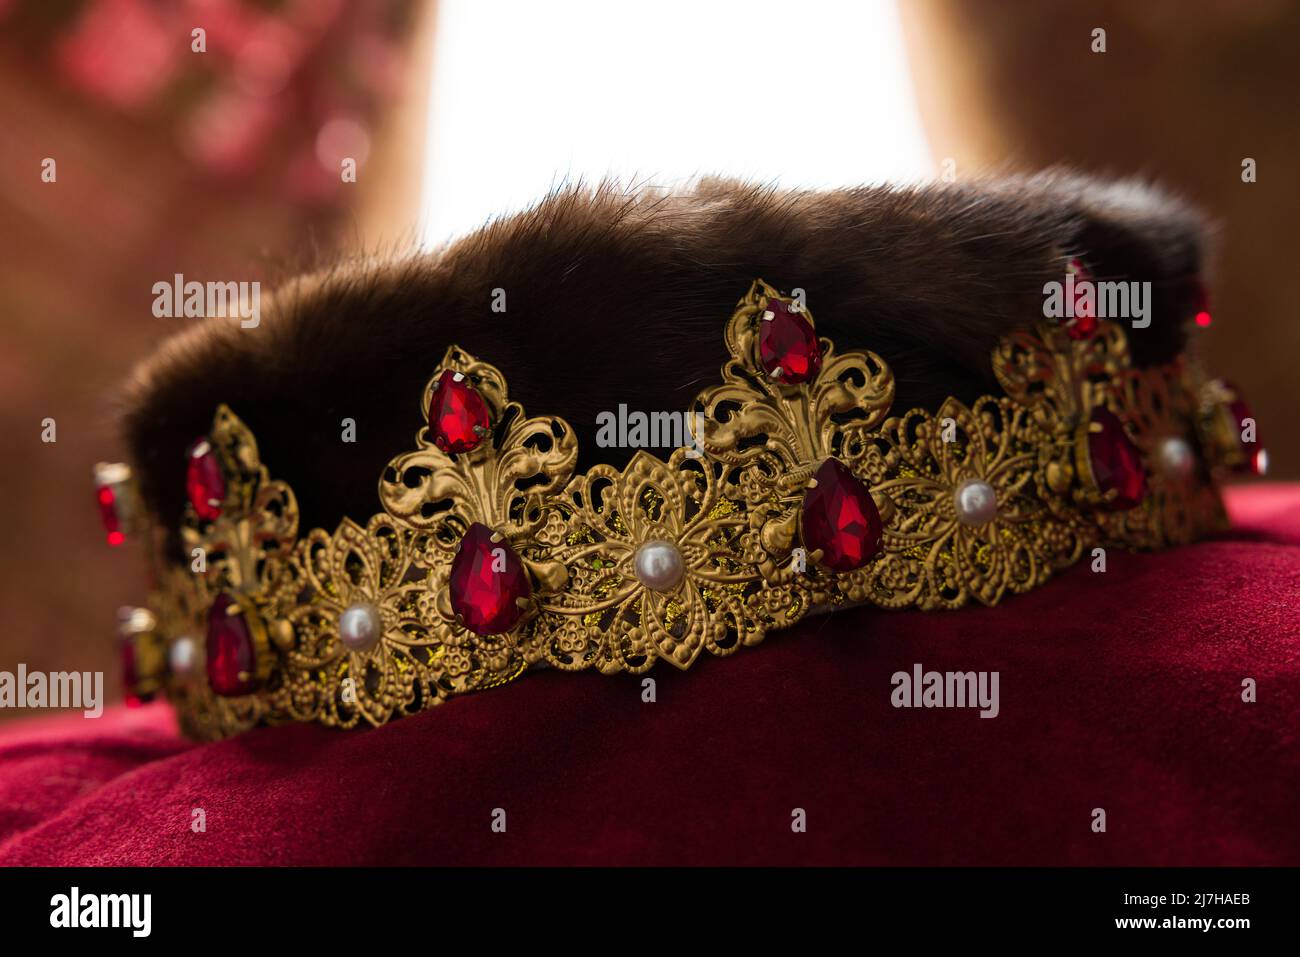 Goldene Krone mit Hintergrundbeleuchtung und roten Samtvorhängen fotografiert Stockfoto